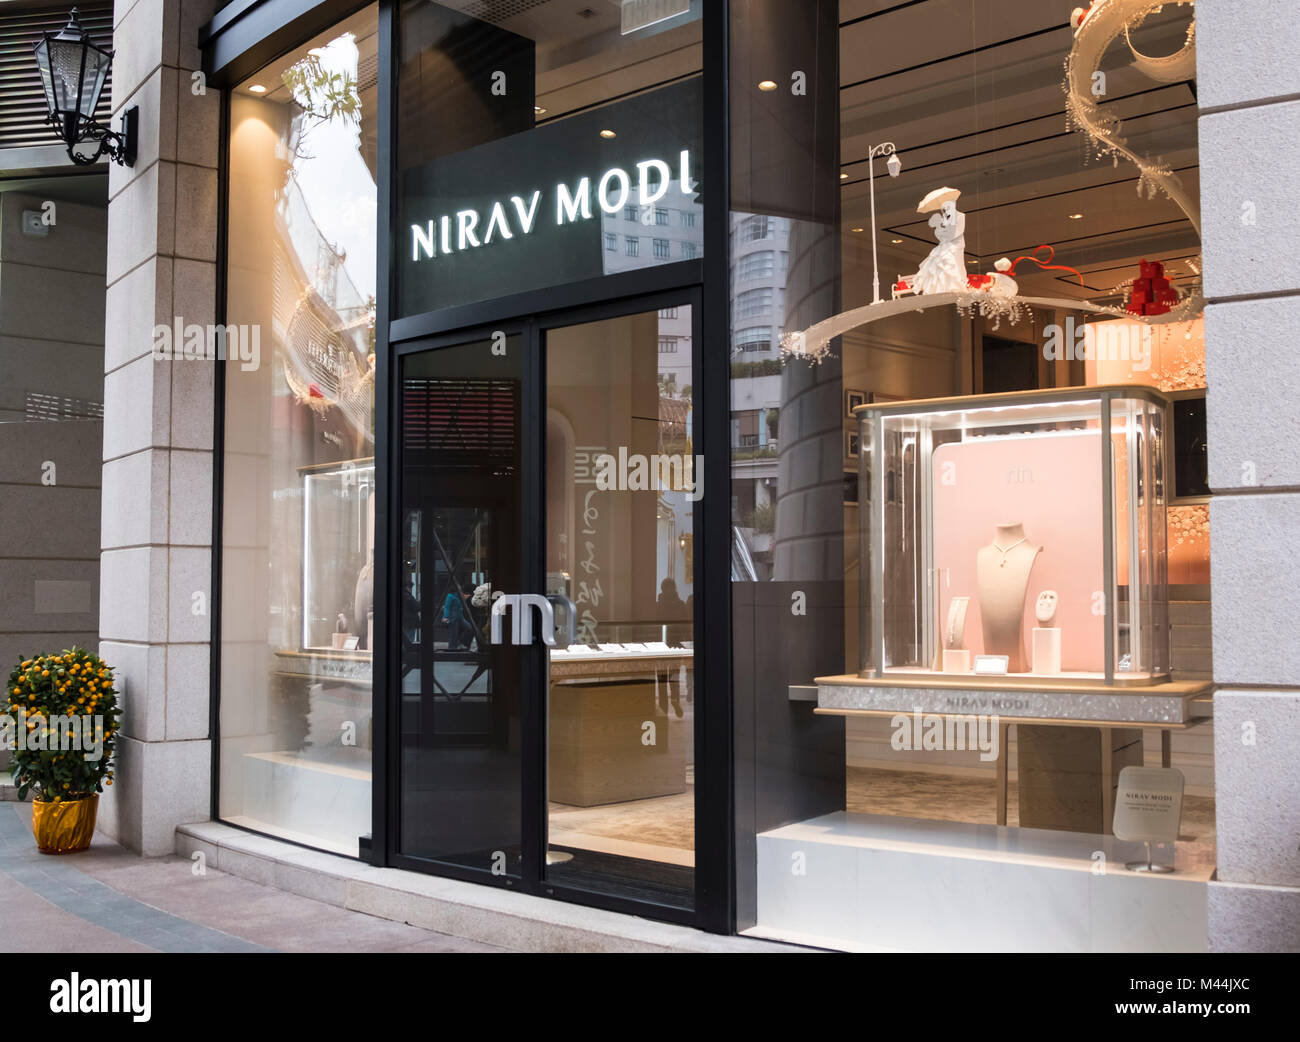 Hongkong - Februar 4, 2018: Nirav Modi Store in Hongkong. Nirav Modi ist eine globale Diamant Schmuck Haus. Stockfoto